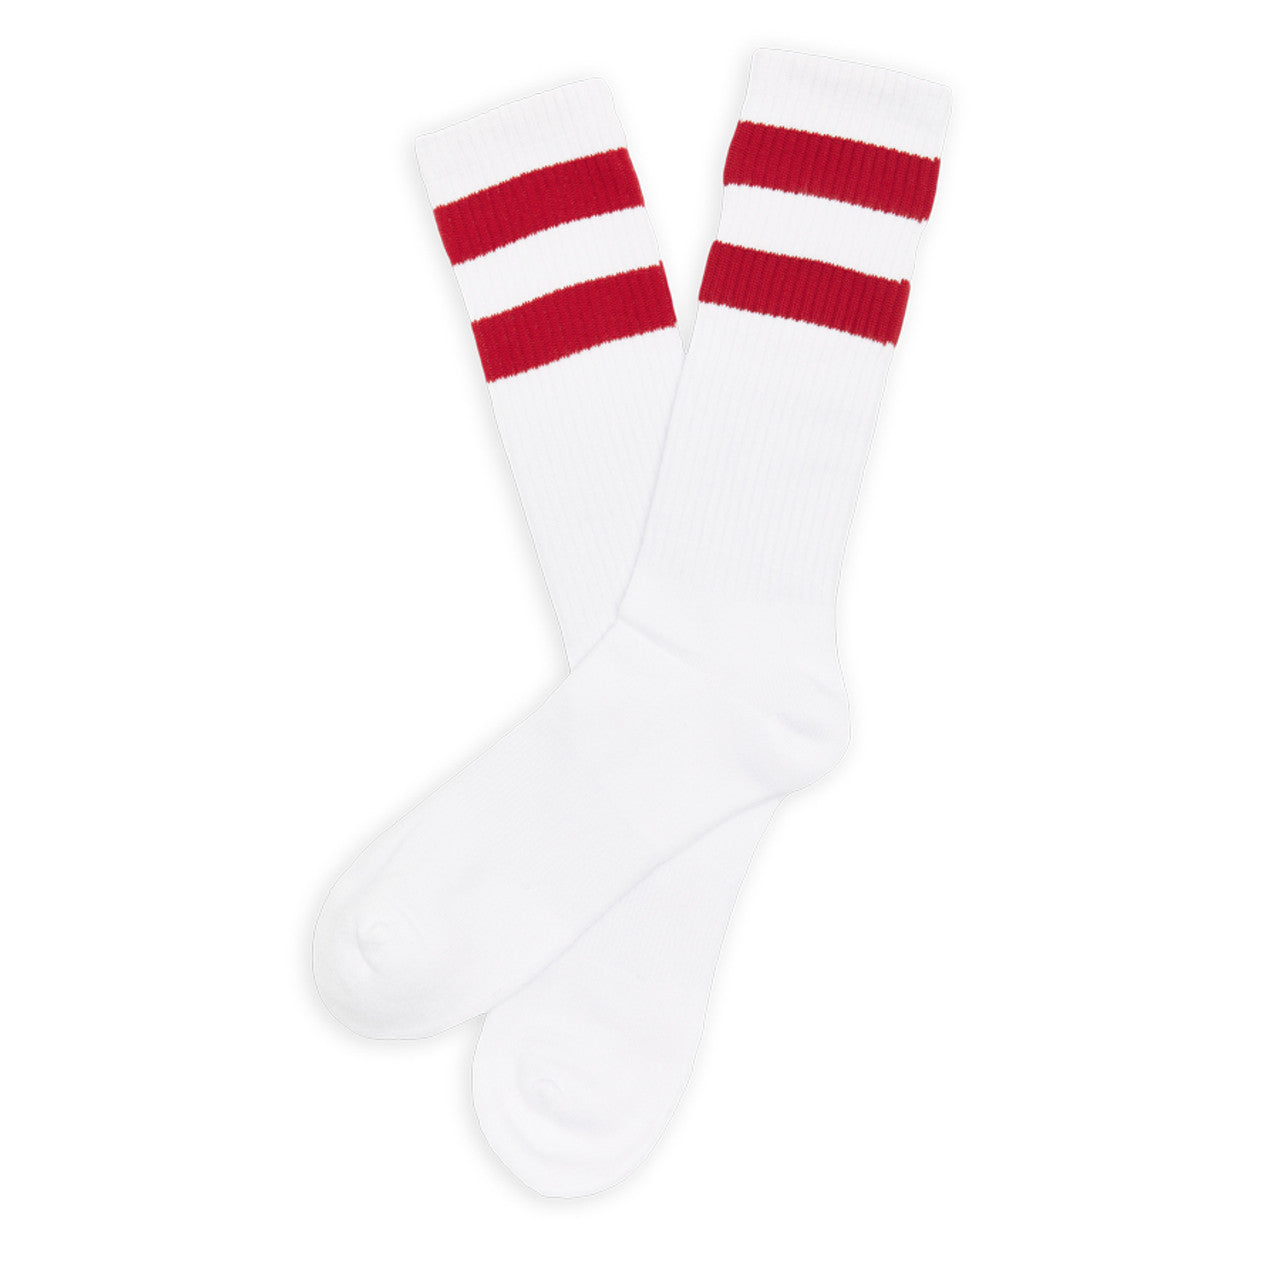 DeadSoxy Crimson Retro Casual Socks